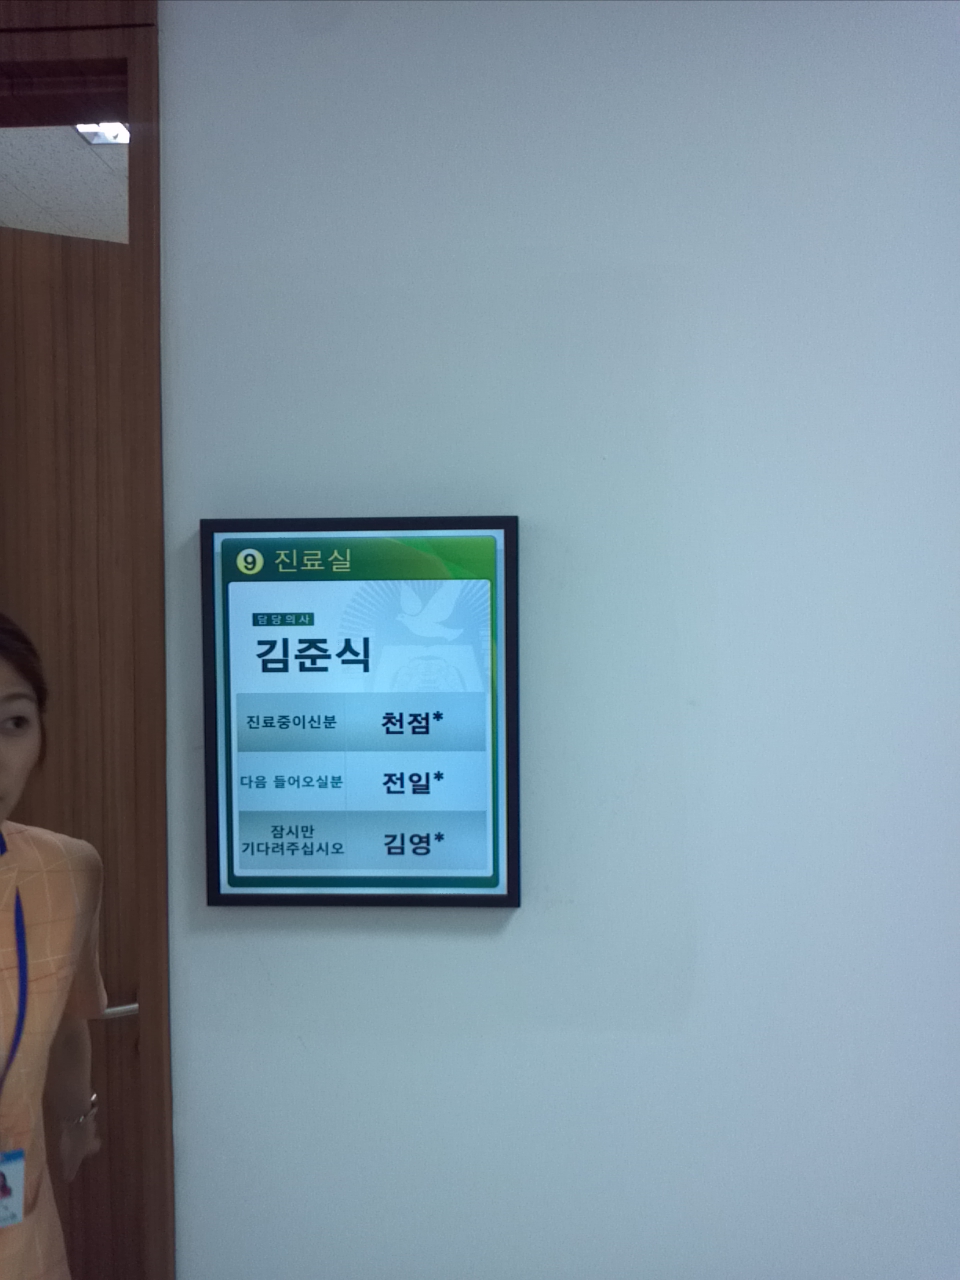 서울 특별시 서남병원 환자대기 시스템 개발/구축 썸네일